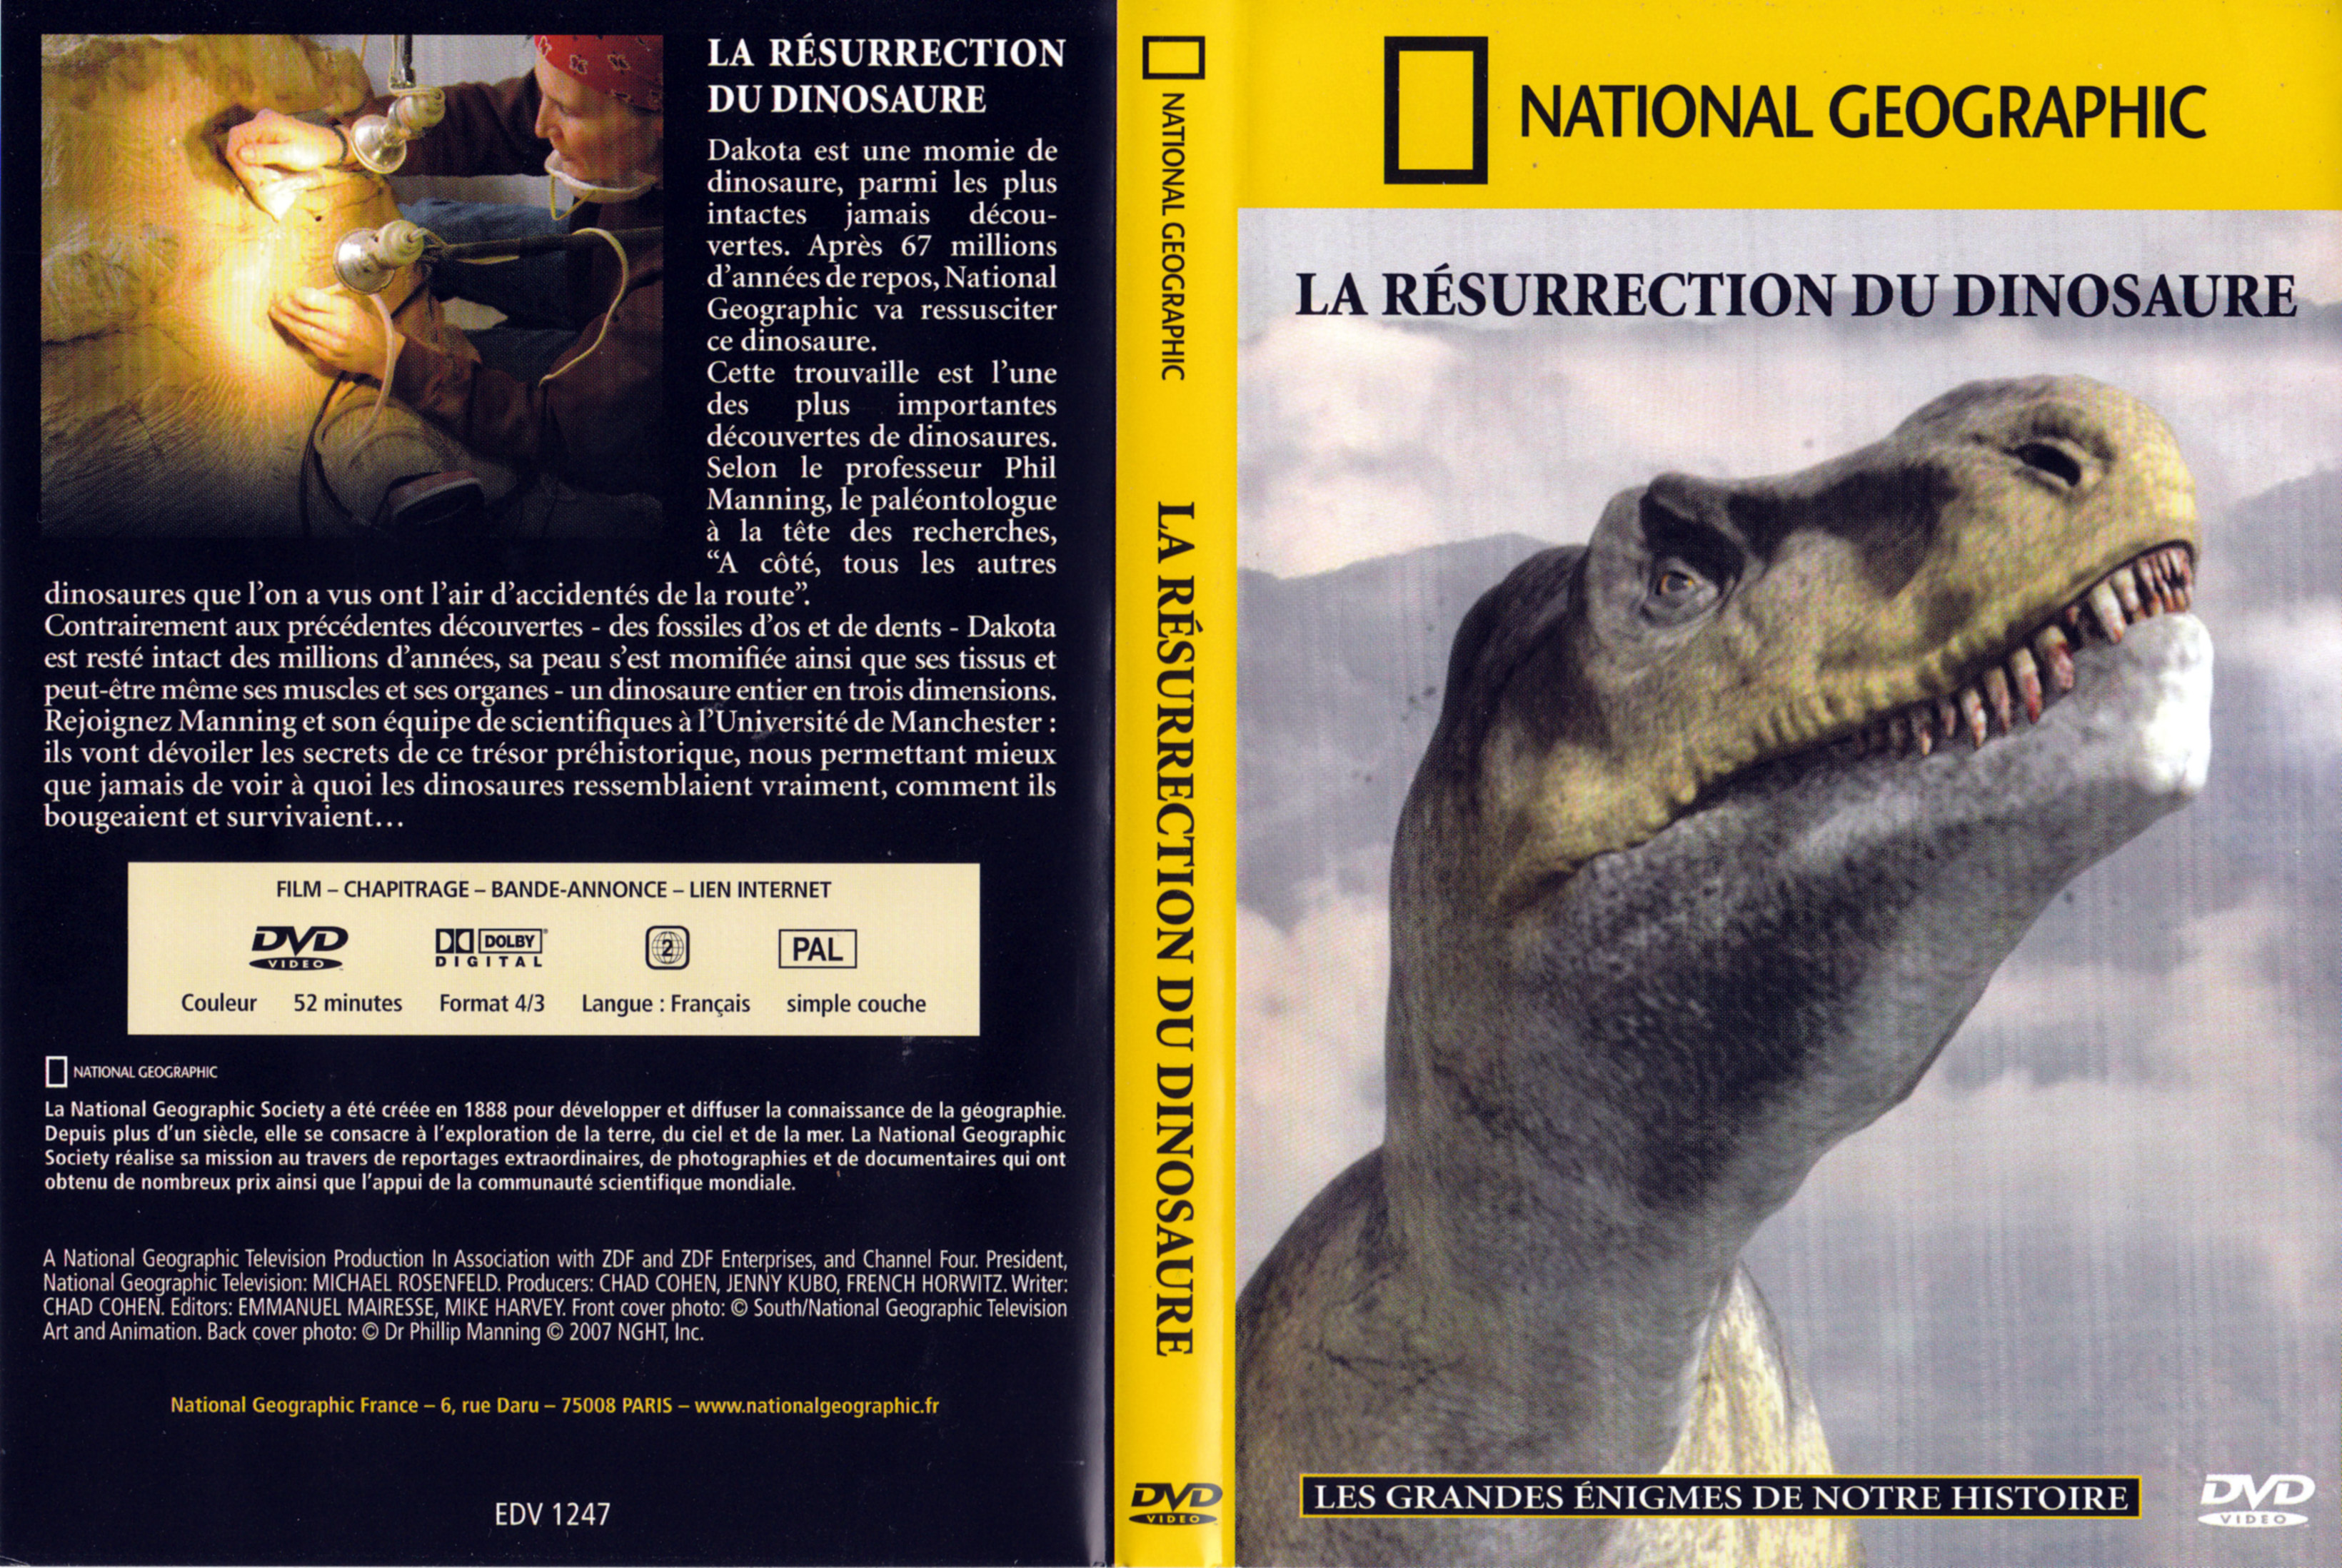 Jaquette DVD National Geographic - La resurrection du dinosaure